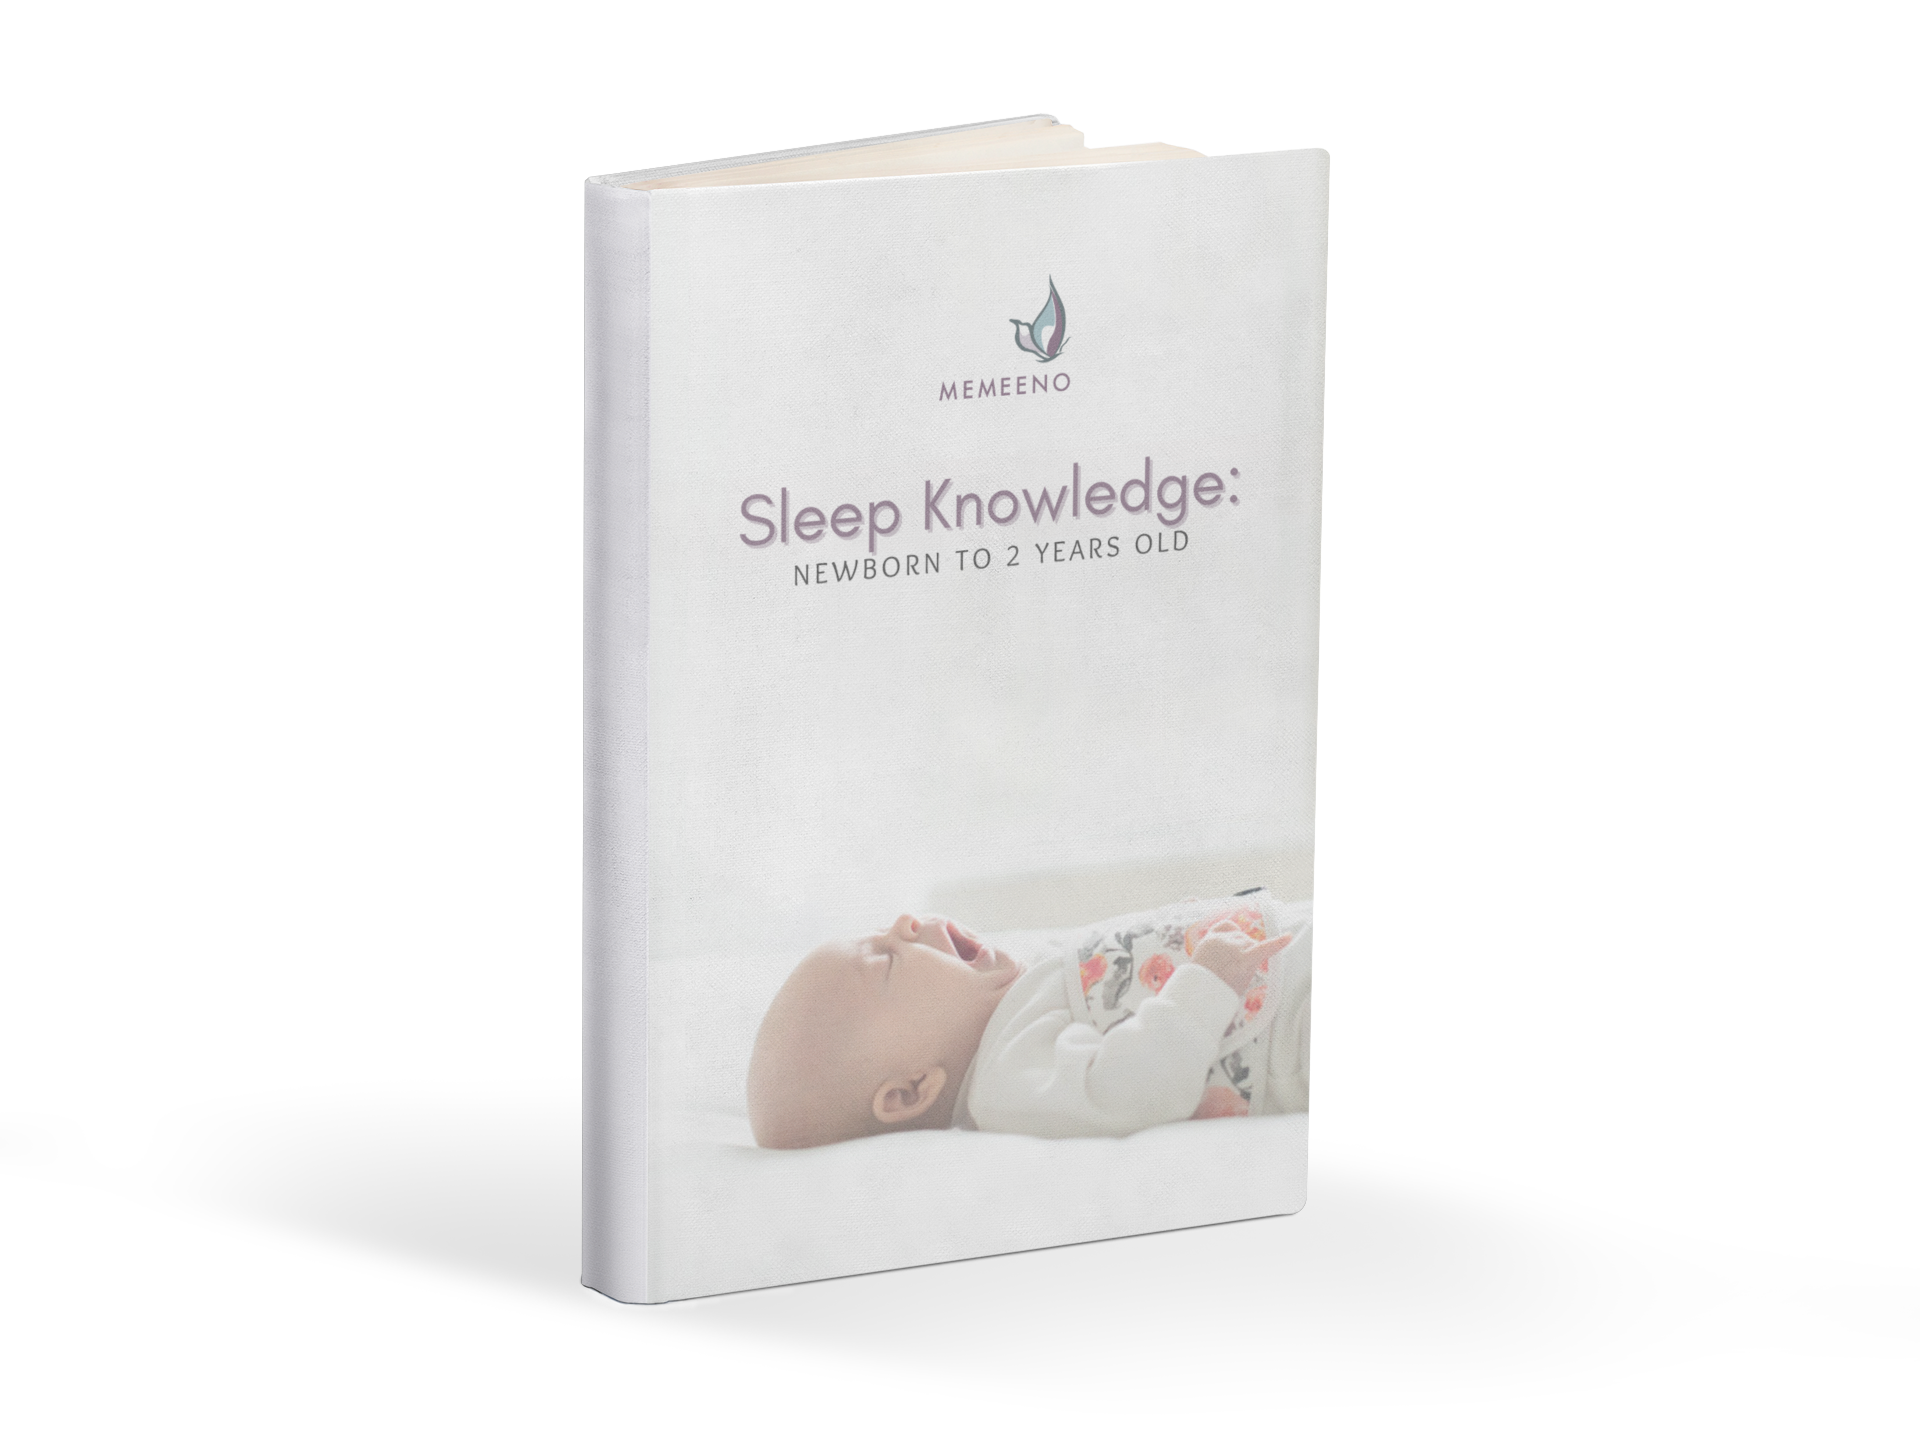 MEMEENO downloadable ebook Sleep Knowledge newborn to 2 years old